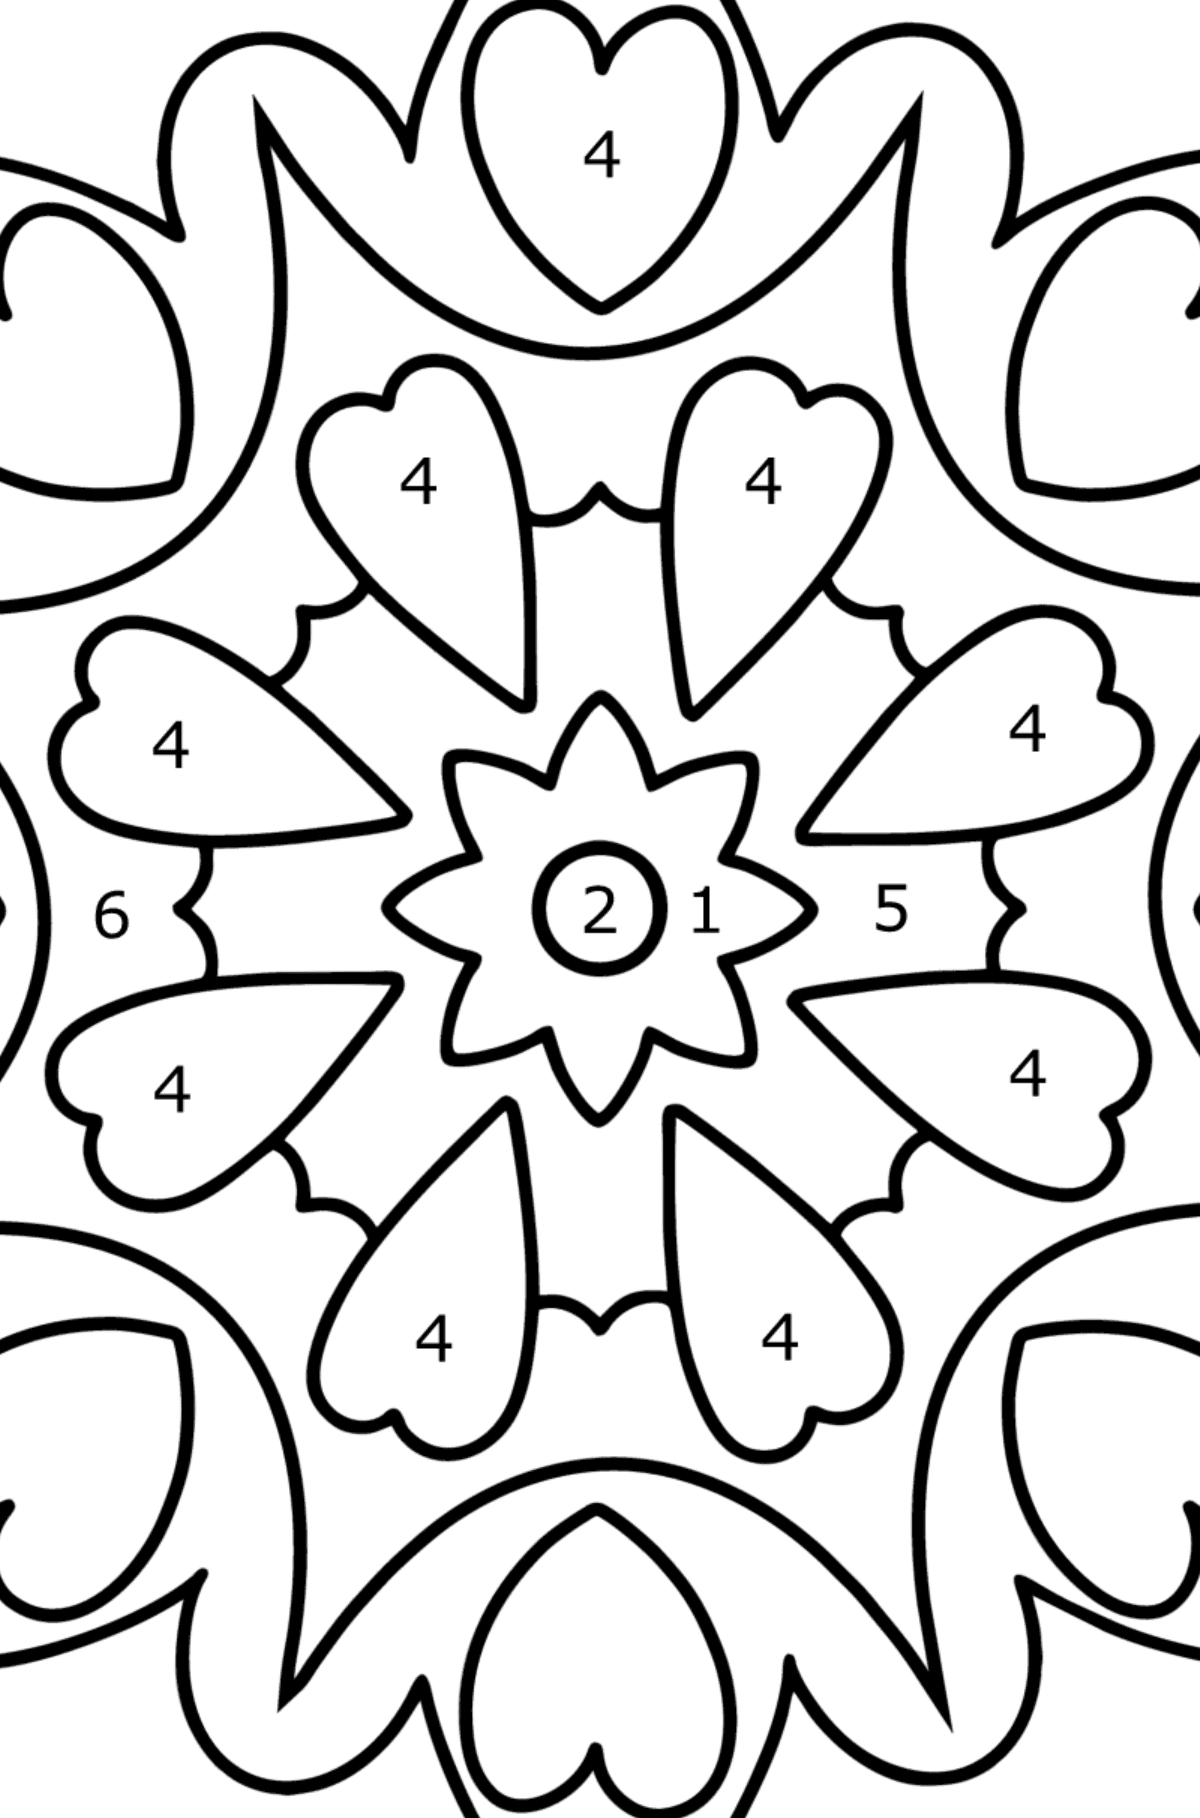 Mandala Ausmalbild - 21 Elemente - Malen nach Zahlen für Kinder